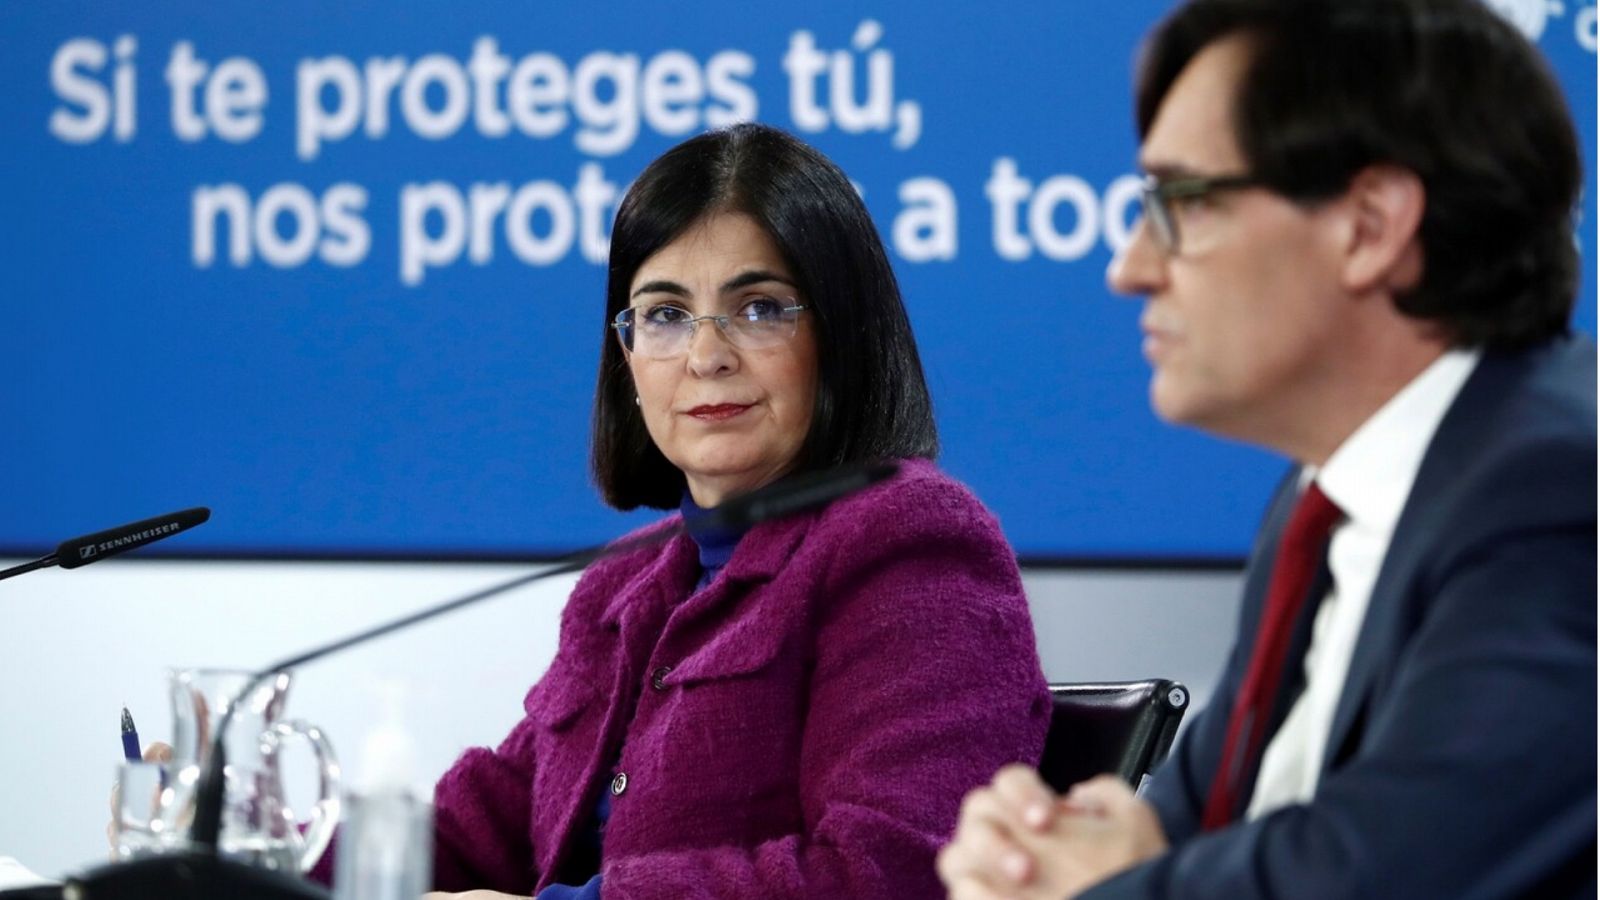 Especial informativo - Comparecencia del ministro de Sanidad, y ministra de Política Territorial - 13/01/21 - RTVE.es